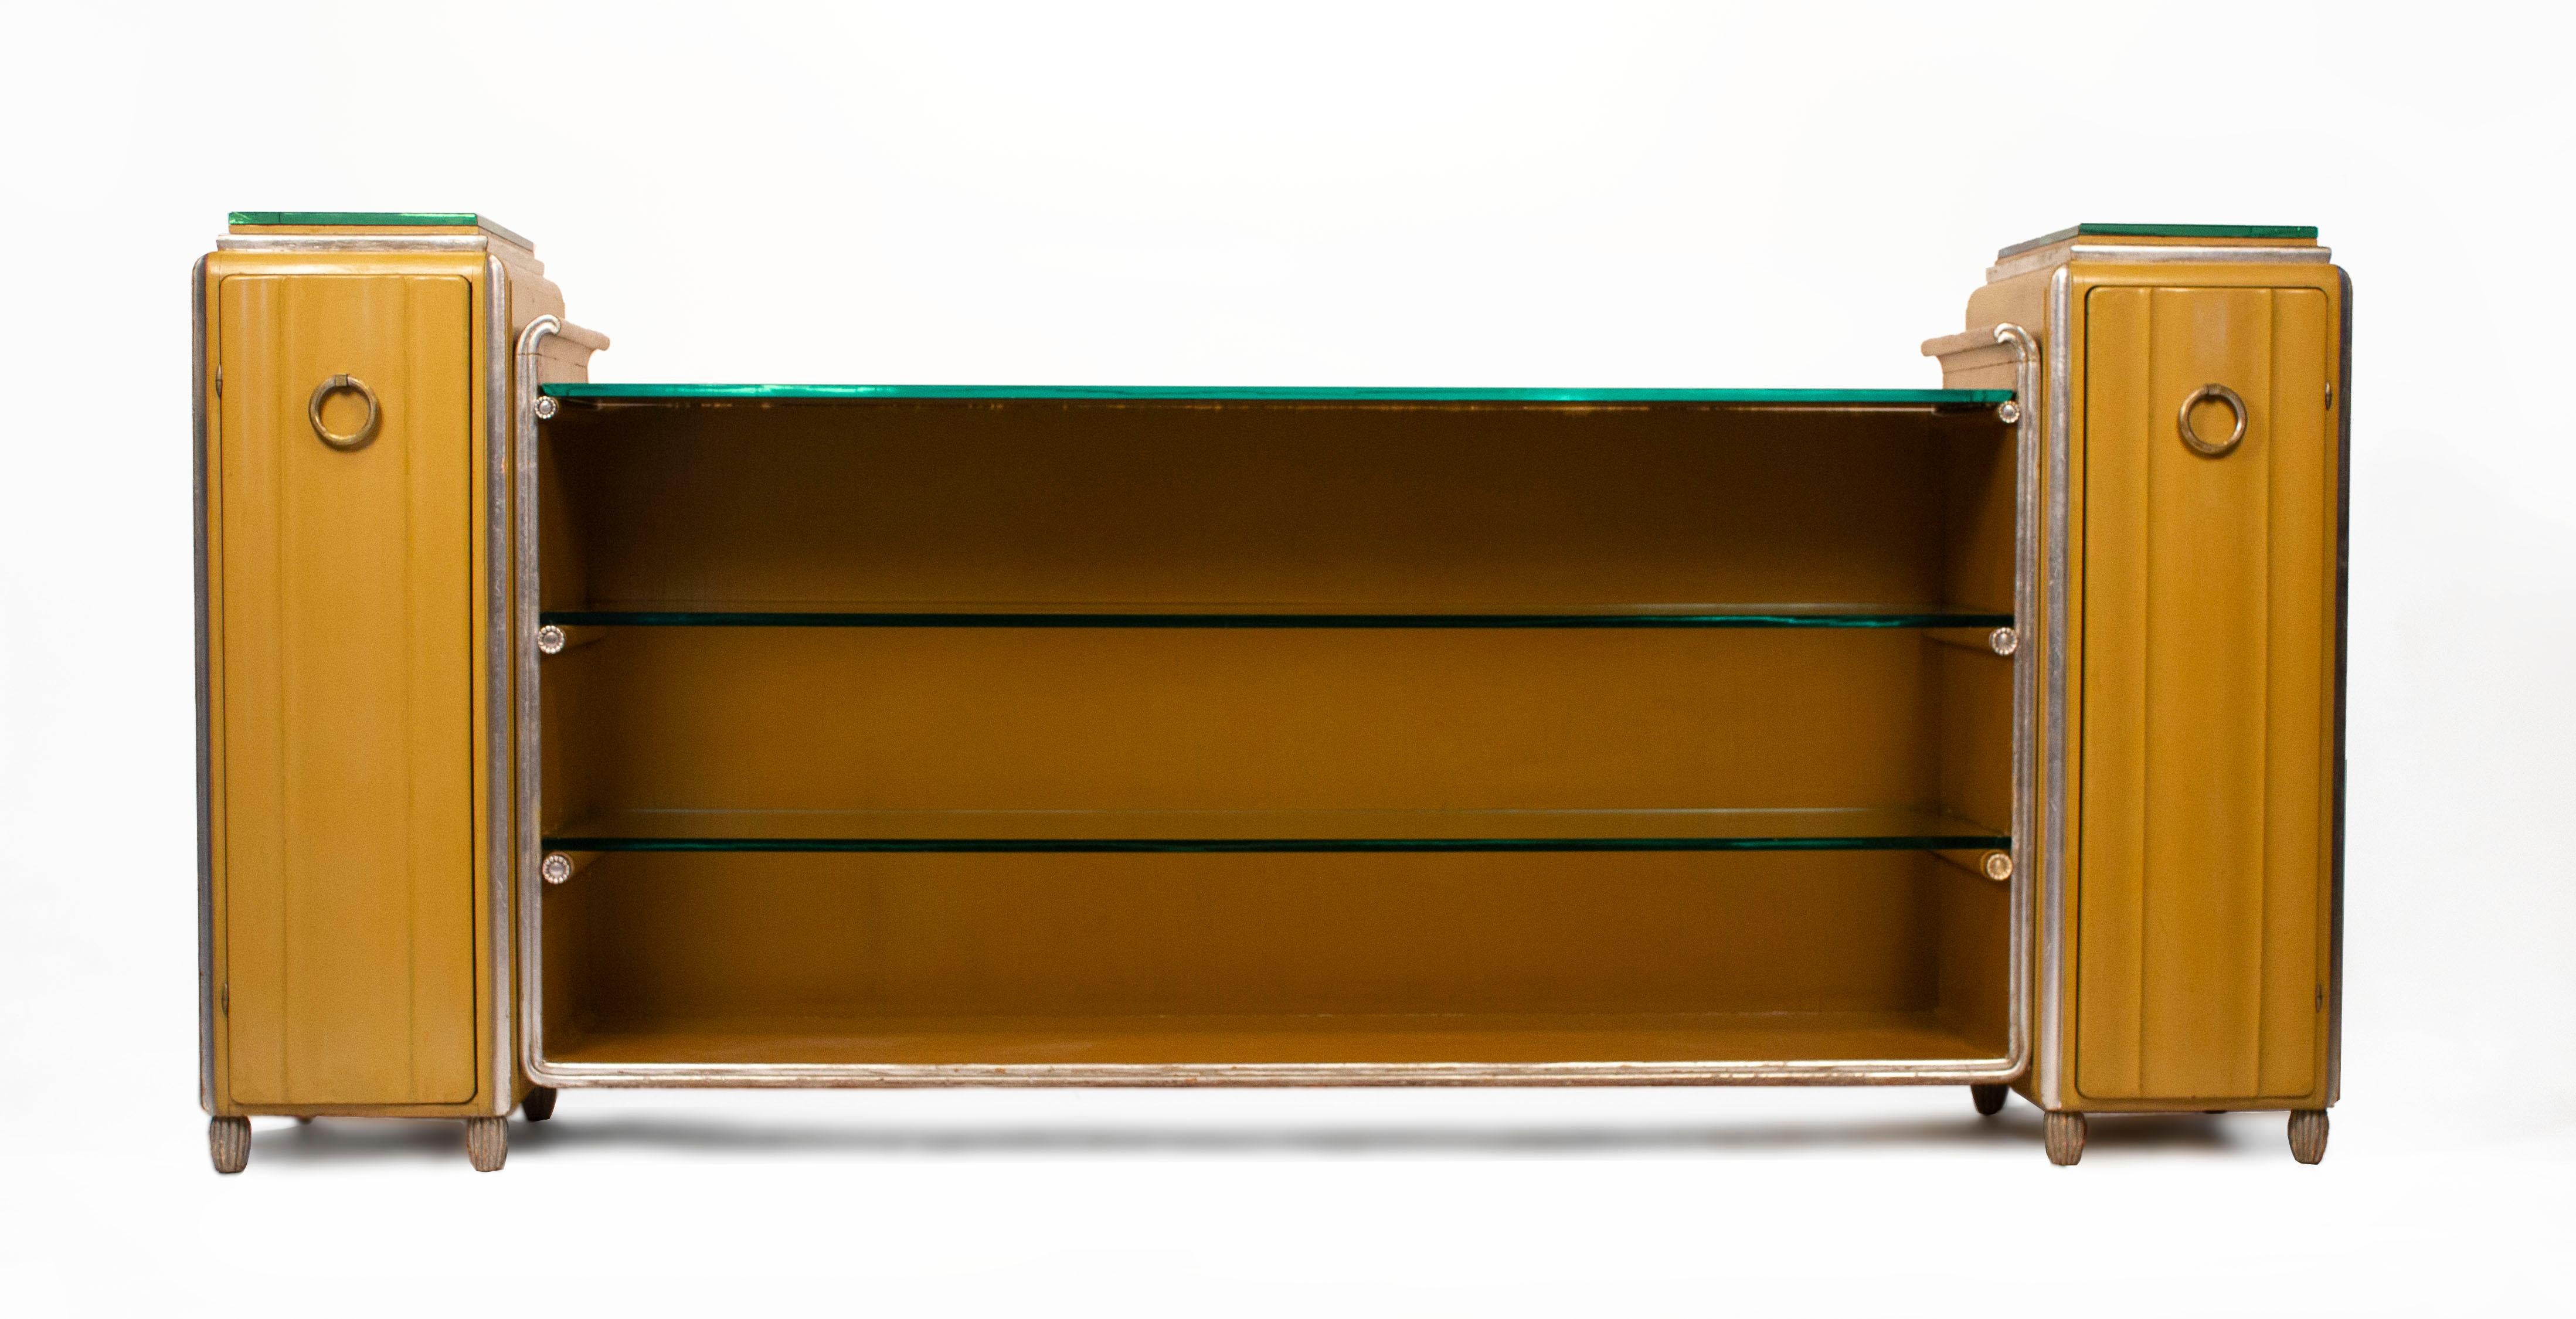 Seltenes und bedeutendes lackiertes Sideboard in zweifarbiger, ockergelber Ausführung mit Blattsilberverzierung, originalen Spiegelplatten, Glasböden, Kugelscharnieren, facettierten Beschlägen aus massivem Messing mit Blattsilber und versilberten